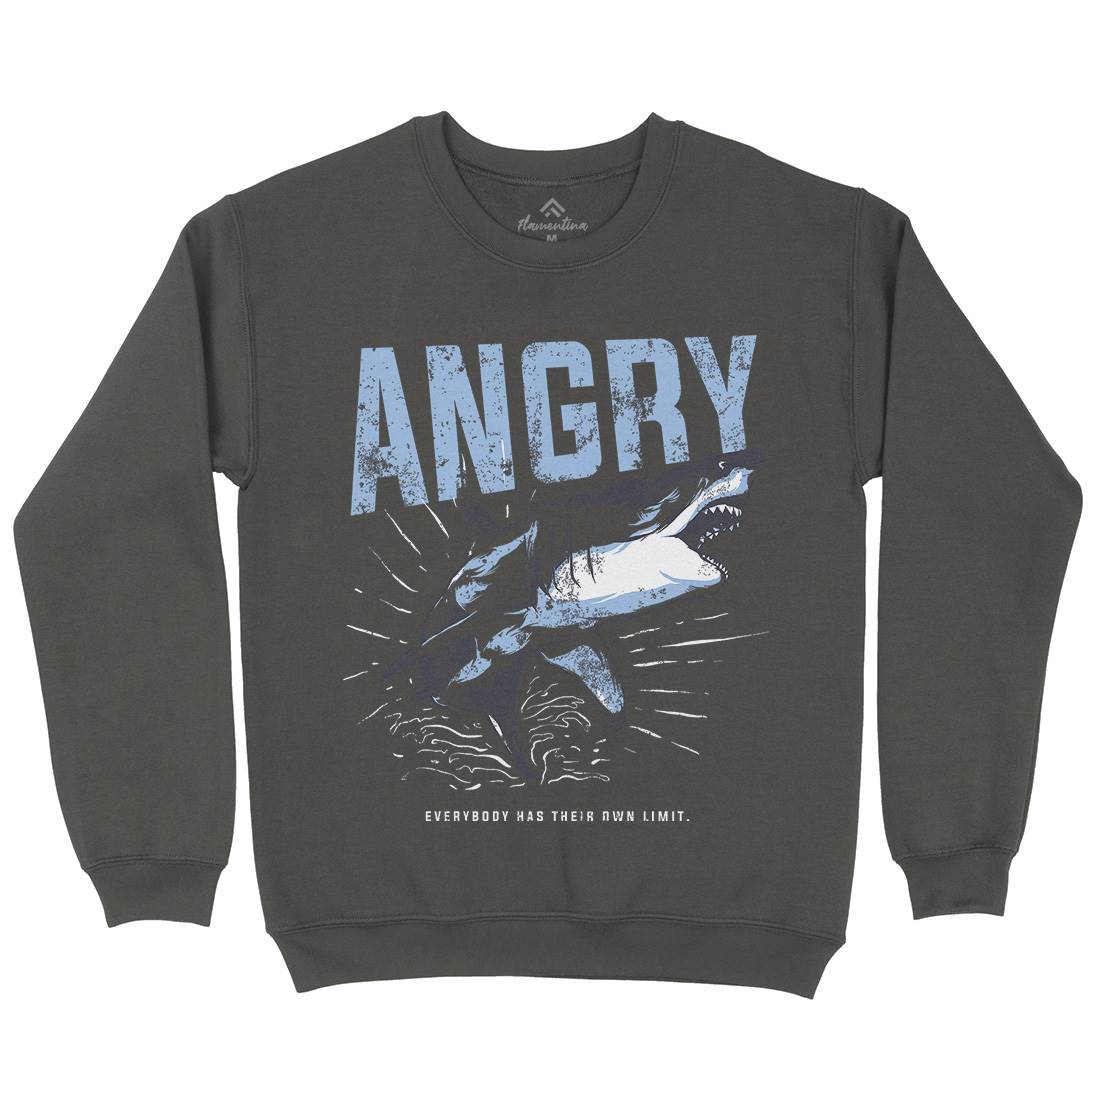 Angry Shark Mens Crew Neck Sweatshirt Fishing B679